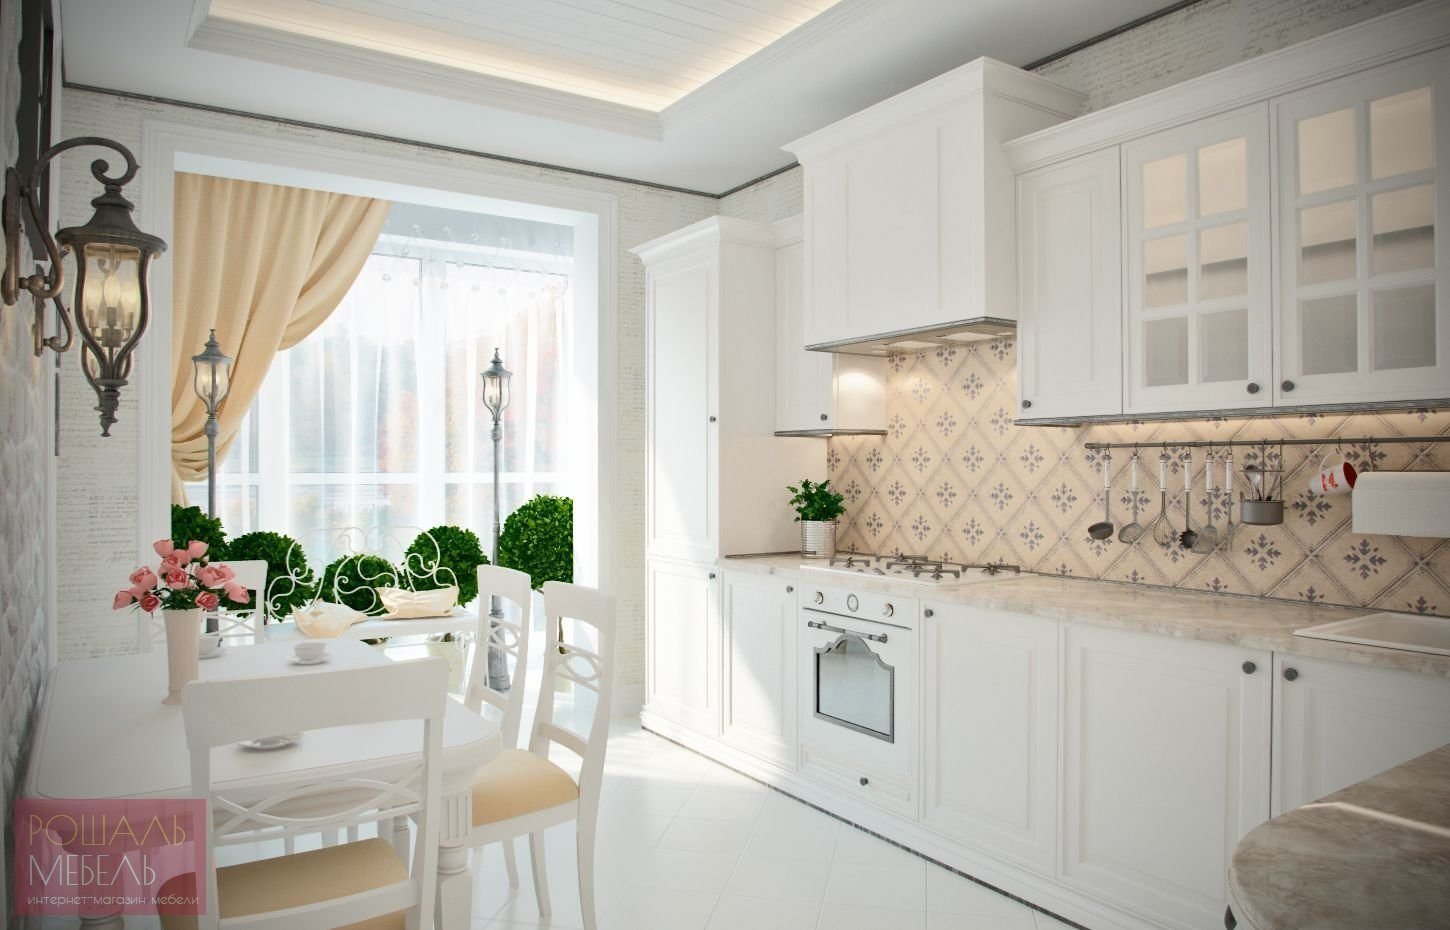 Кухня в стиле прованс - идеи интерьера и составляющие части стиля прованс